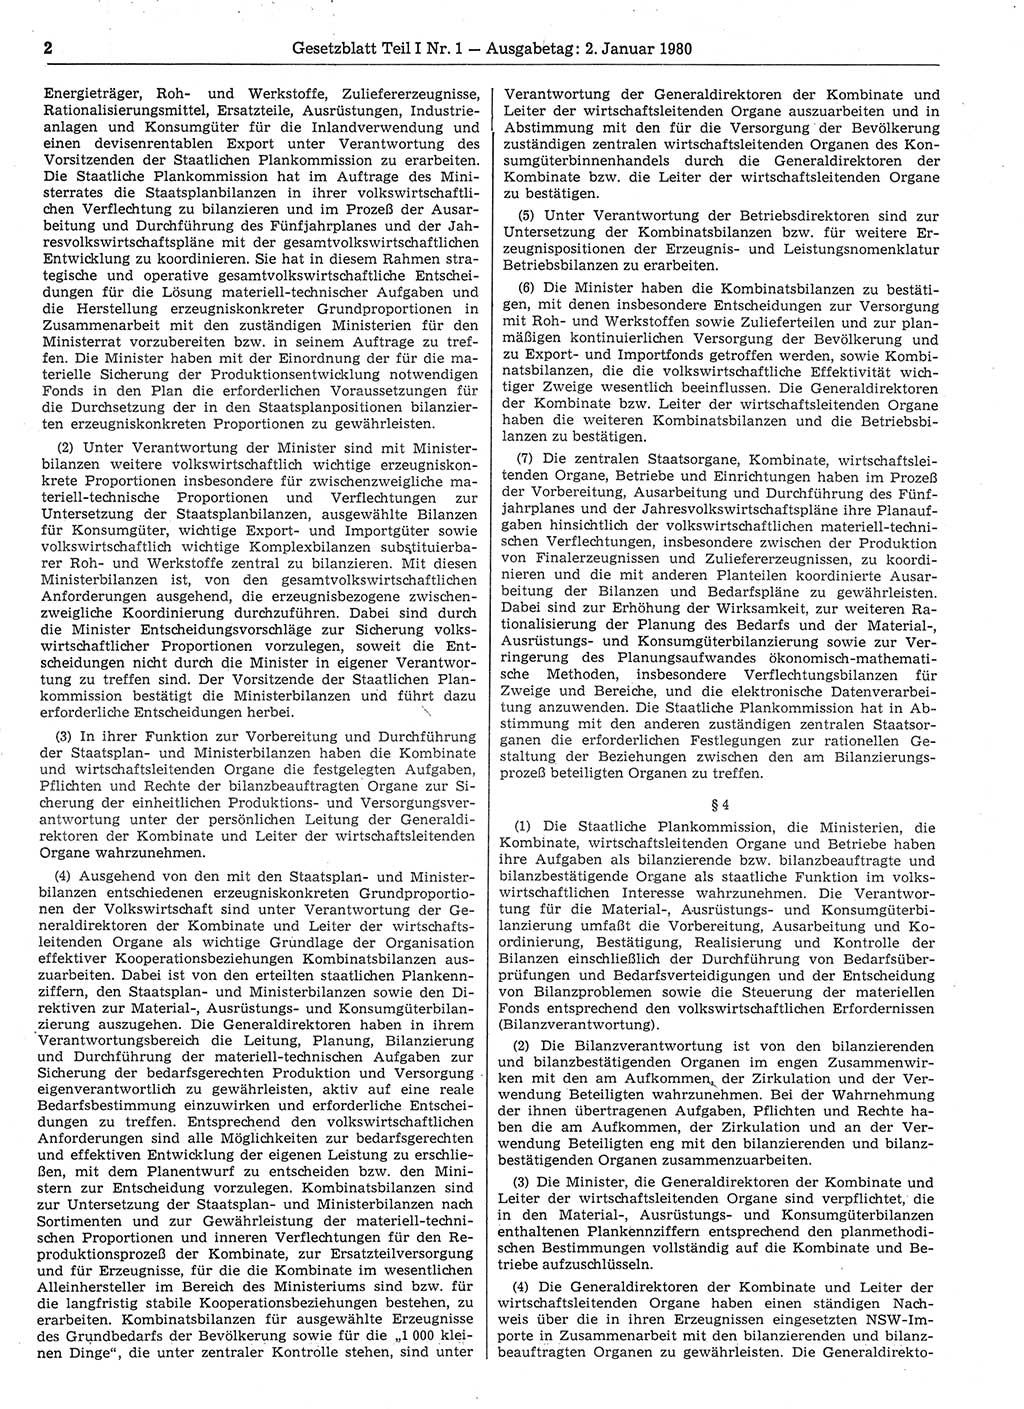 Gesetzblatt (GBl.) der Deutschen Demokratischen Republik (DDR) Teil Ⅰ 1980, Seite 2 (GBl. DDR Ⅰ 1980, S. 2)